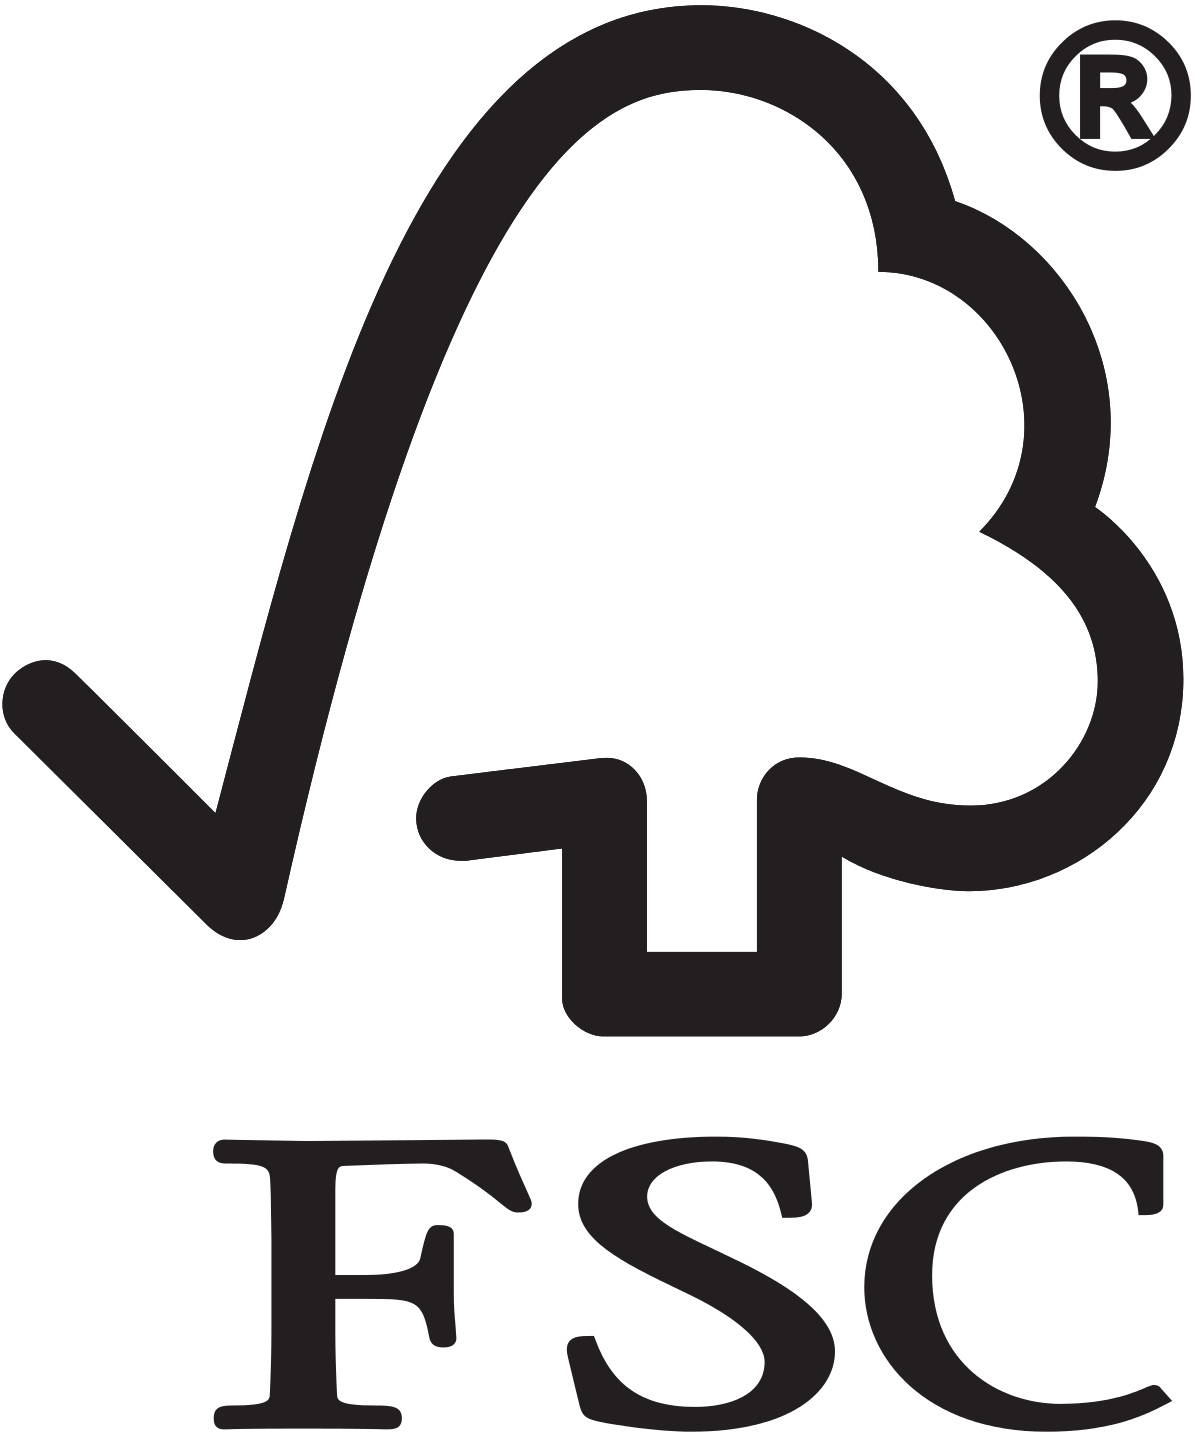 FSC Logo - Forest Stewardship Council